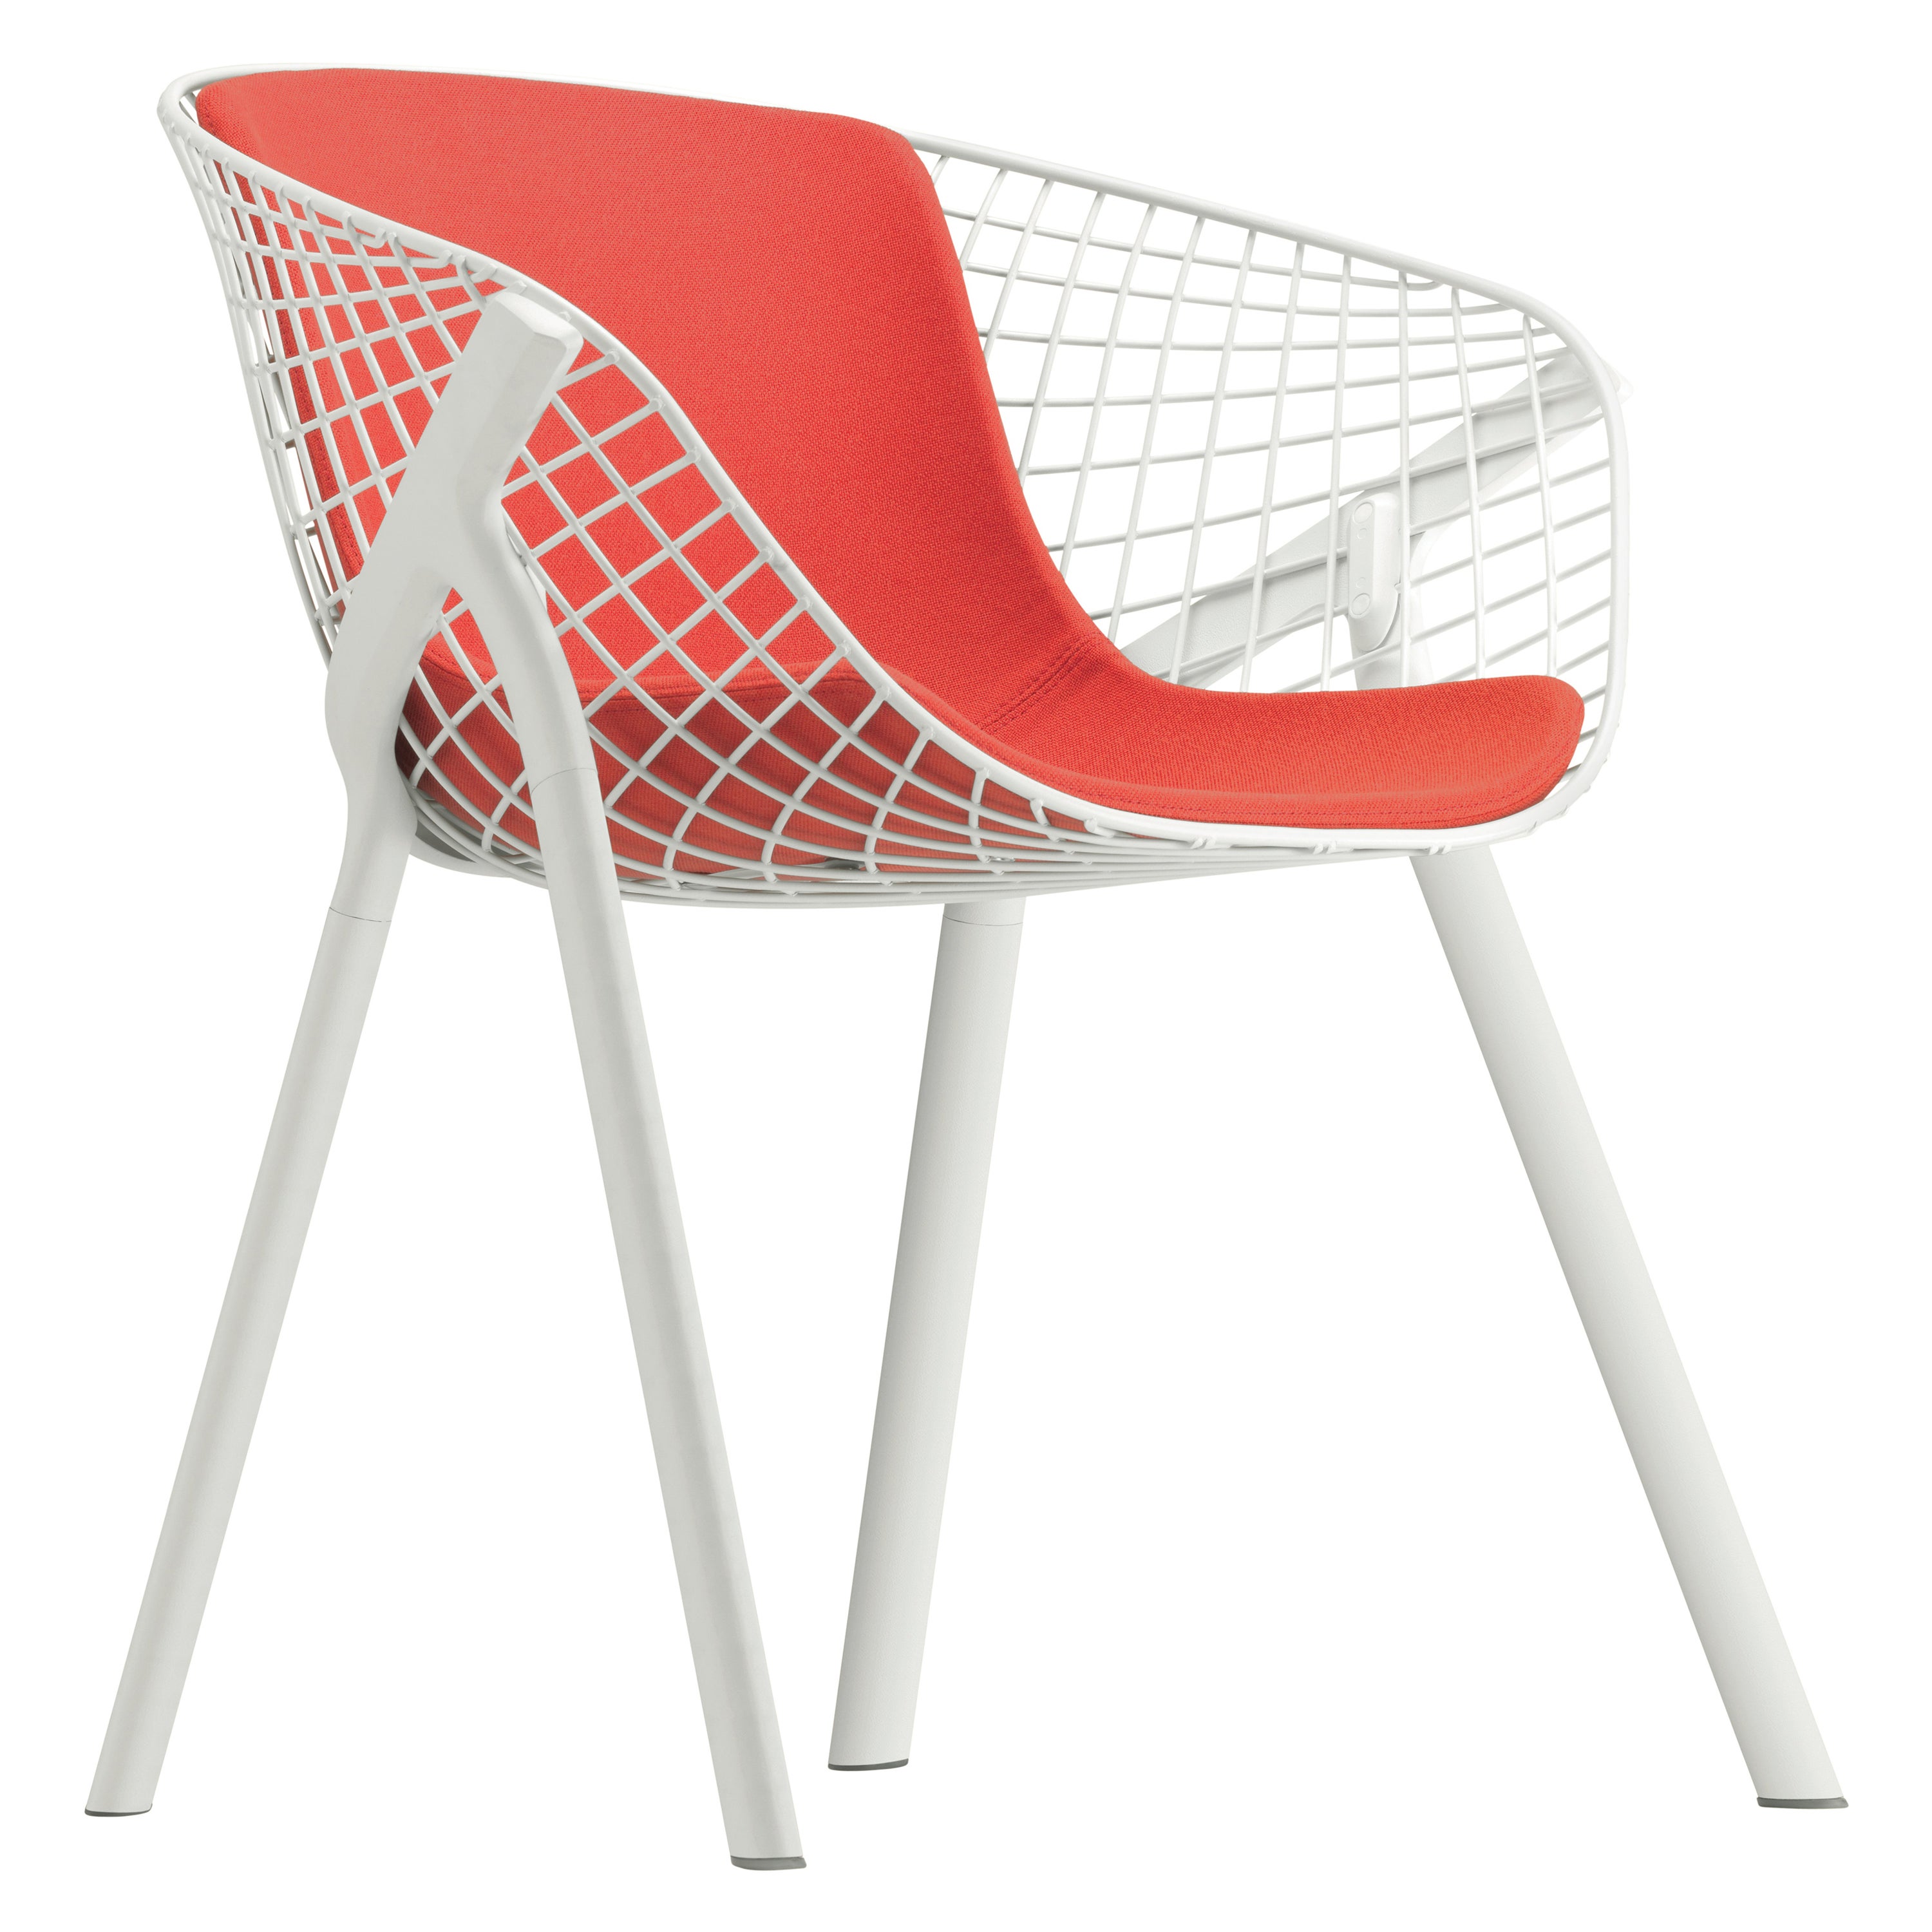 Alias 040 Kobi Chair with Medium Pad in Orange & White Lacquered Aluminum Frame